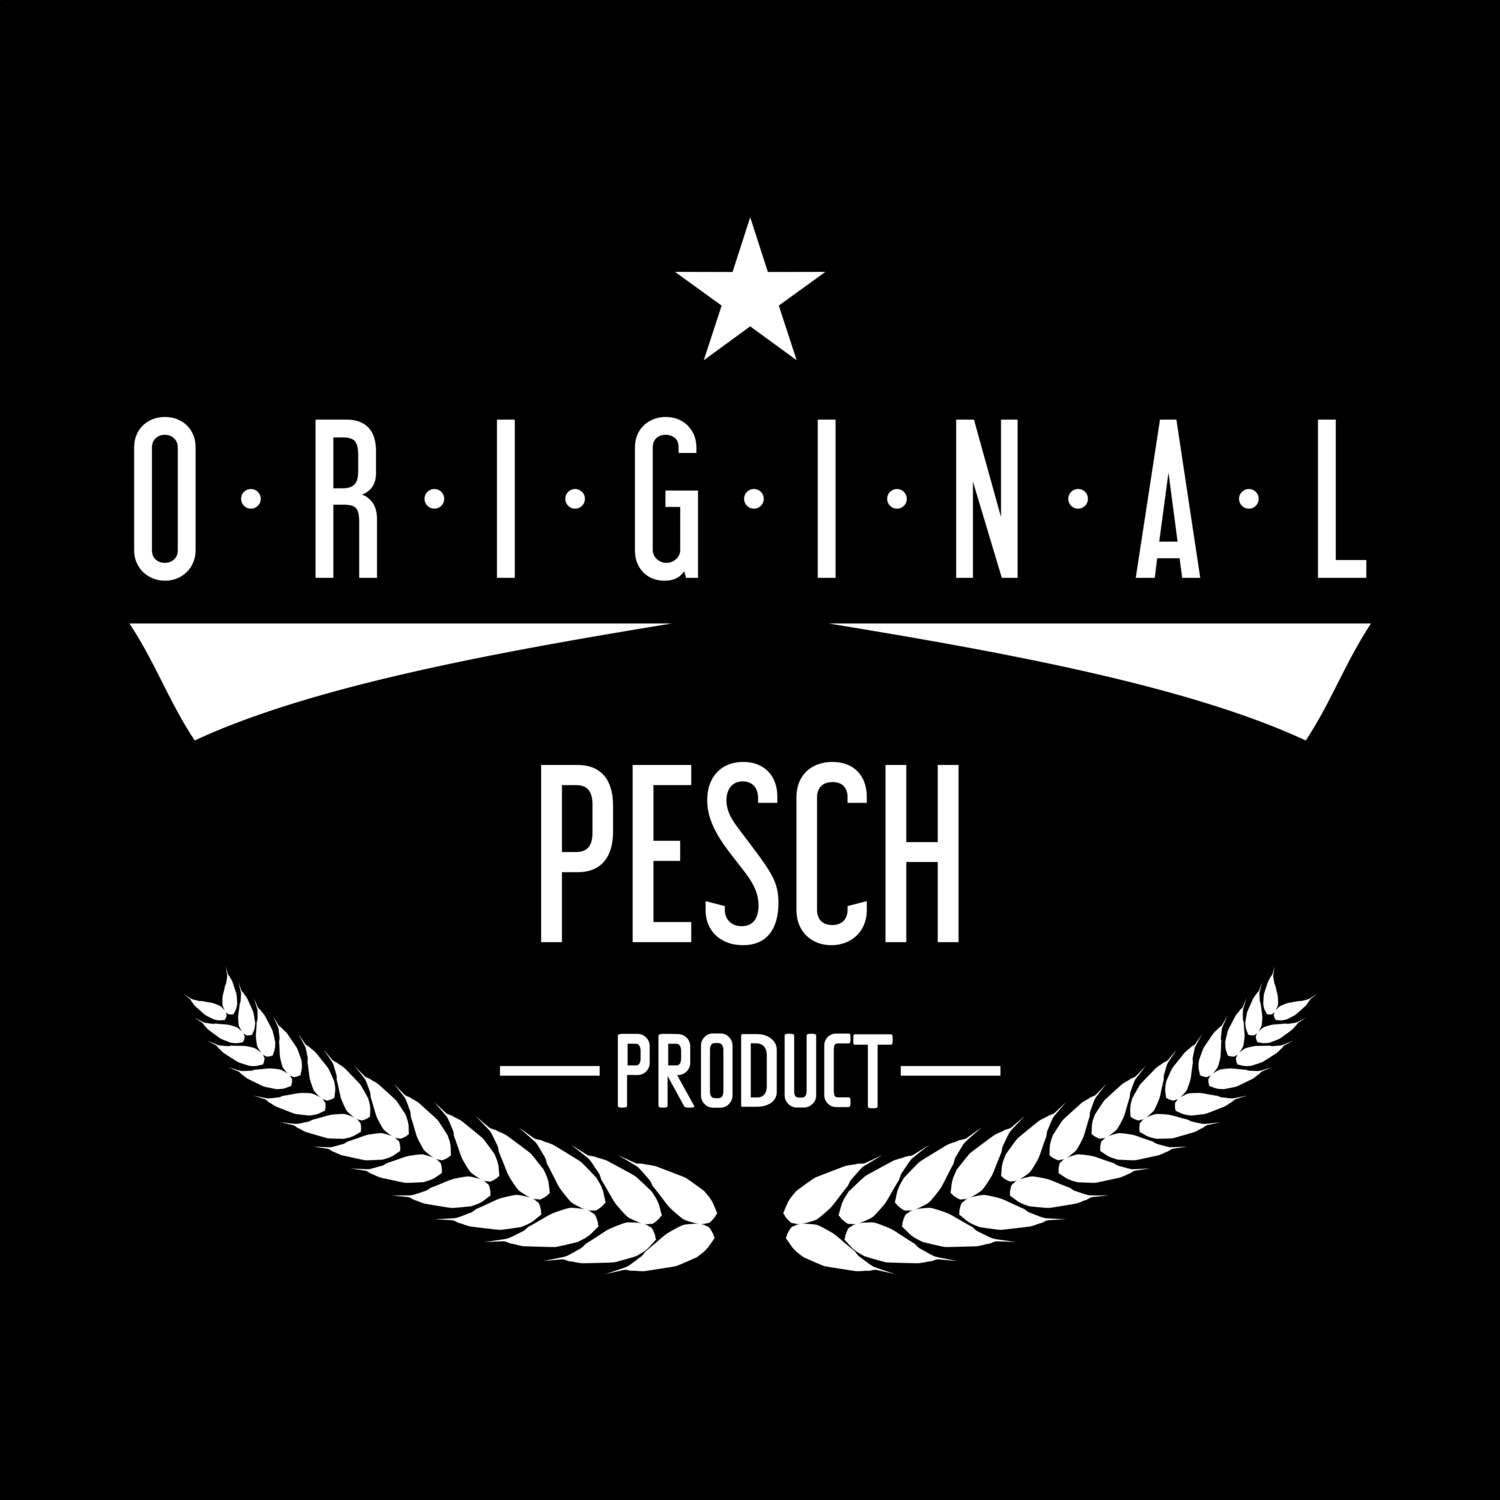 Pesch T-Shirt »Original Product«